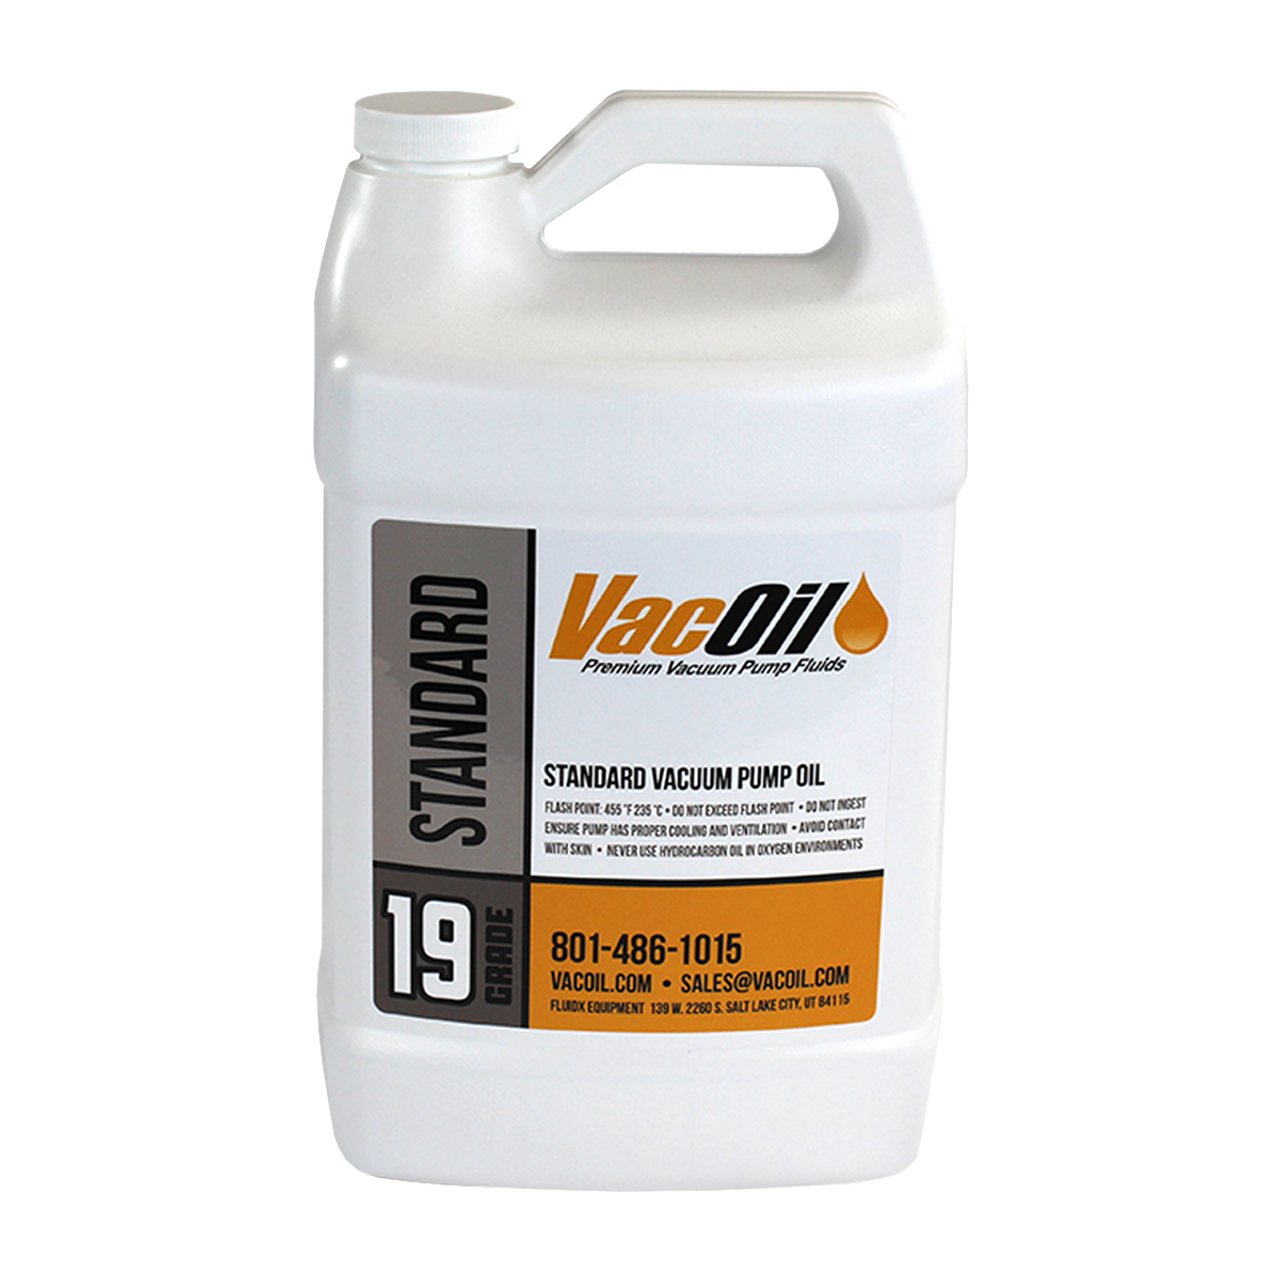 VacOil® 19 Grade Standard Vacuum Pump Oil - 1 Gallon